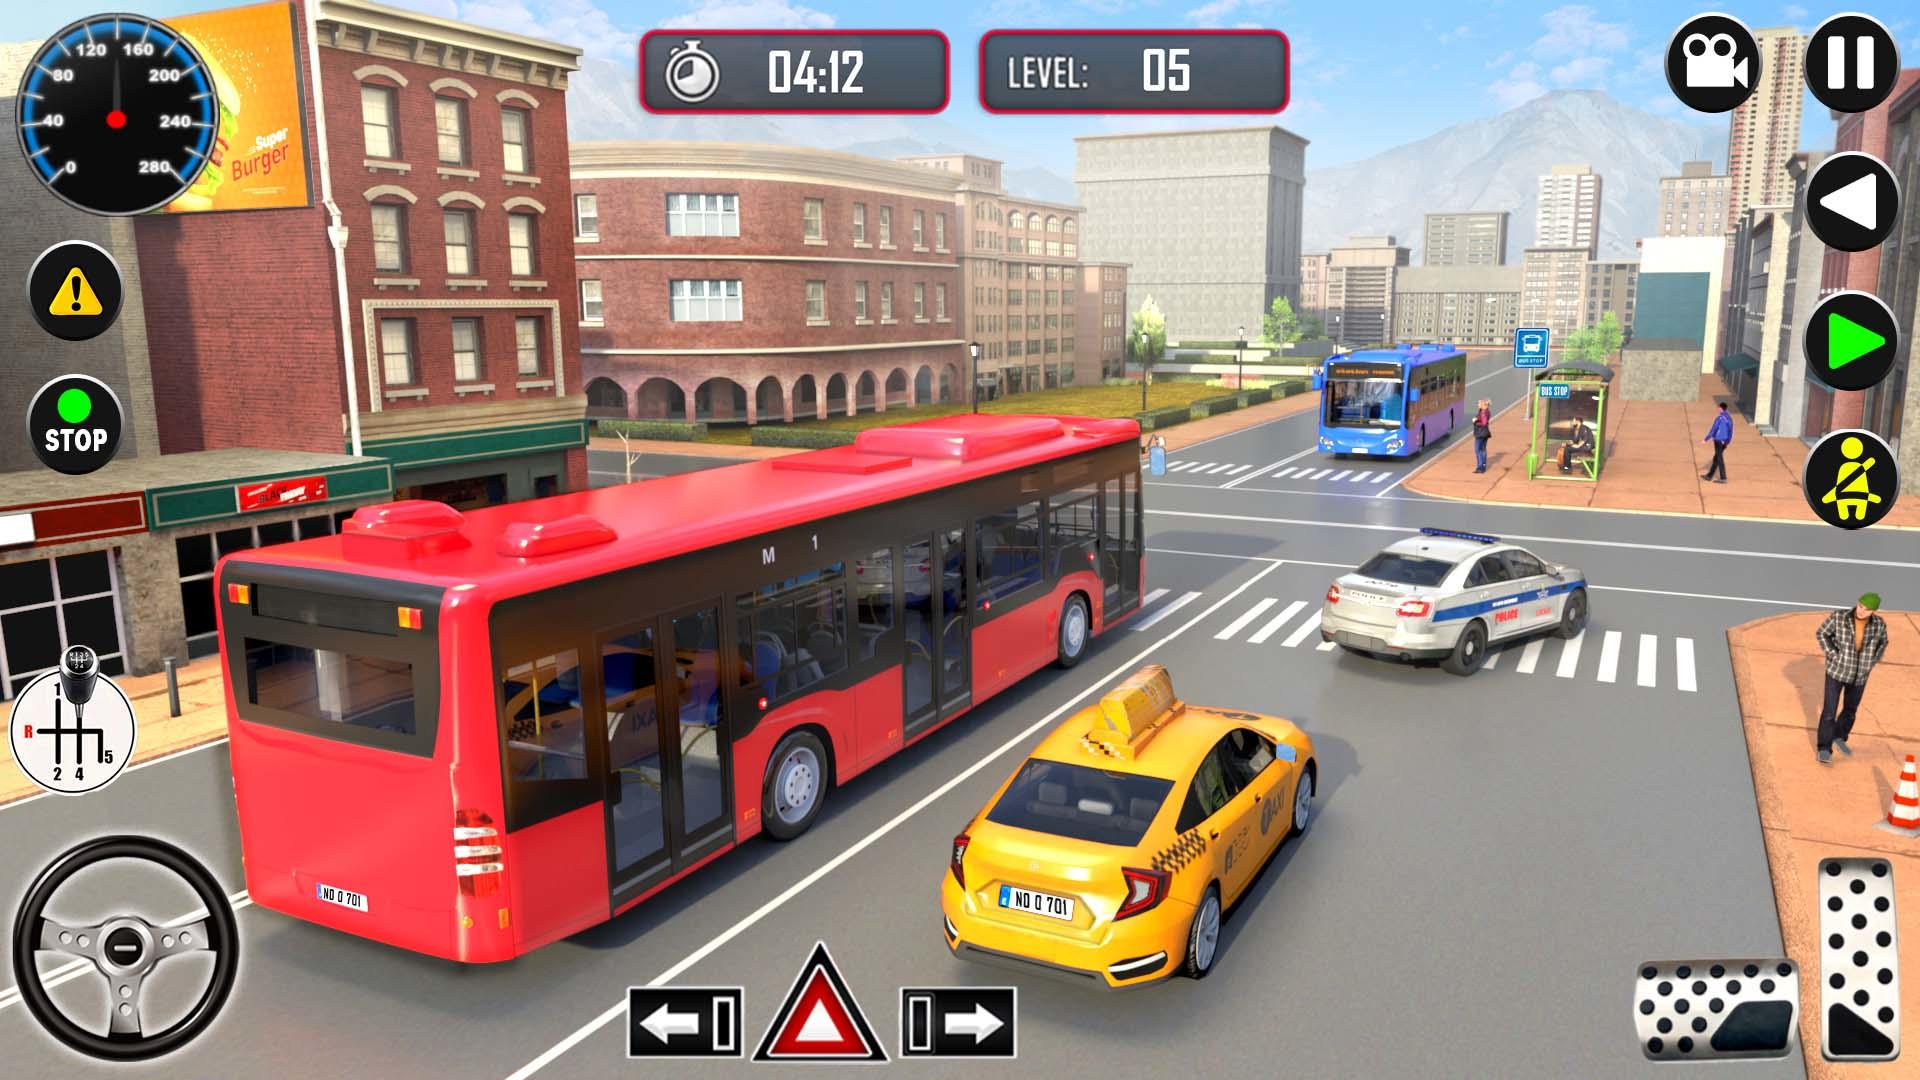 Screenshot 1 of Indian Coach Bus Driving Games 1.0.7